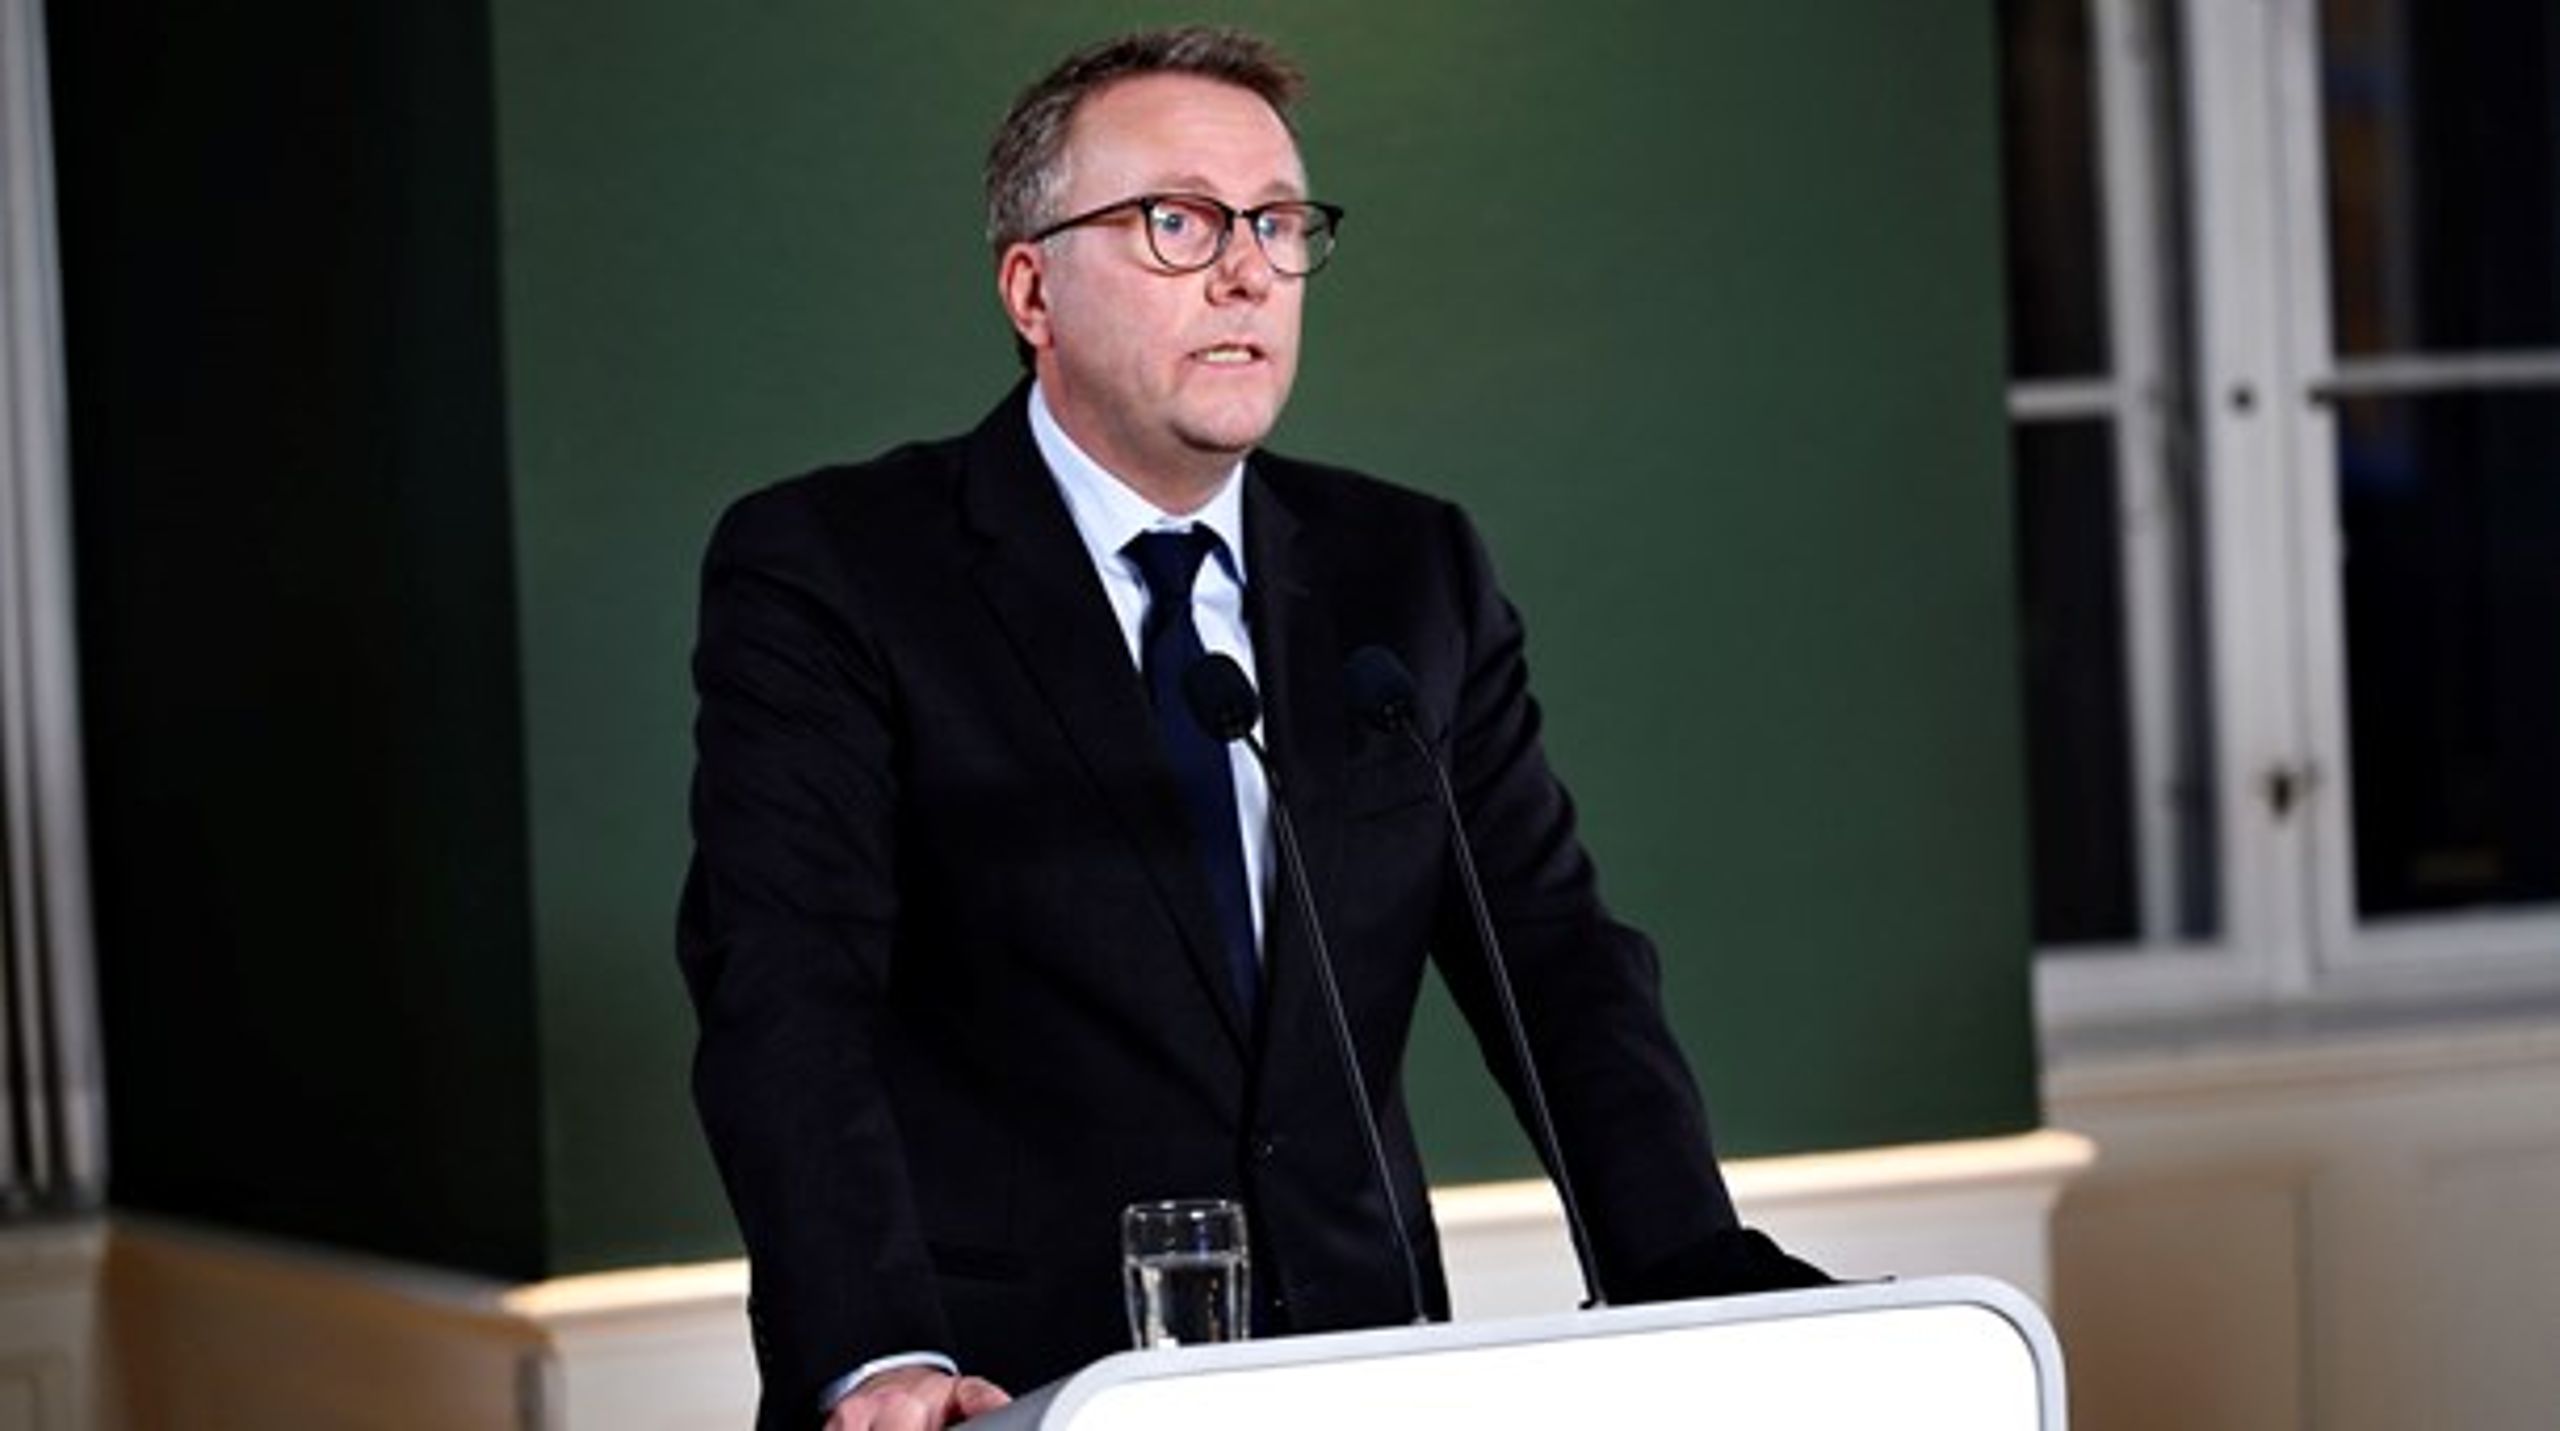 Fungerende finansminister Morten Bødskov (S) præsenterede fredag regeringens økonomiske redegørelse for december 2020.